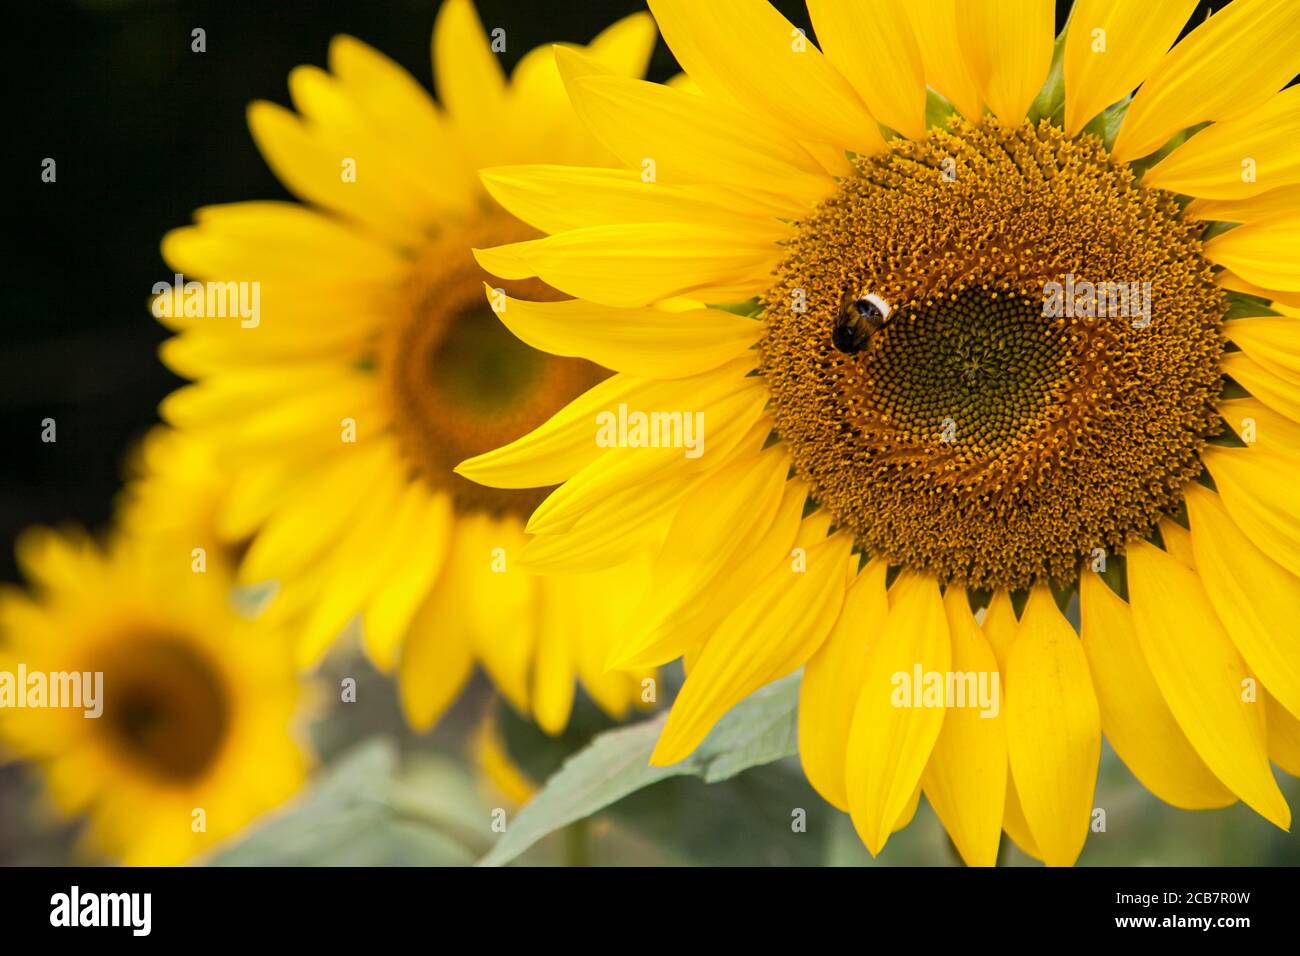 Sonnenblume, Helianthus, Biene auf gelber Blume, die im Freien wächst. Stockfoto